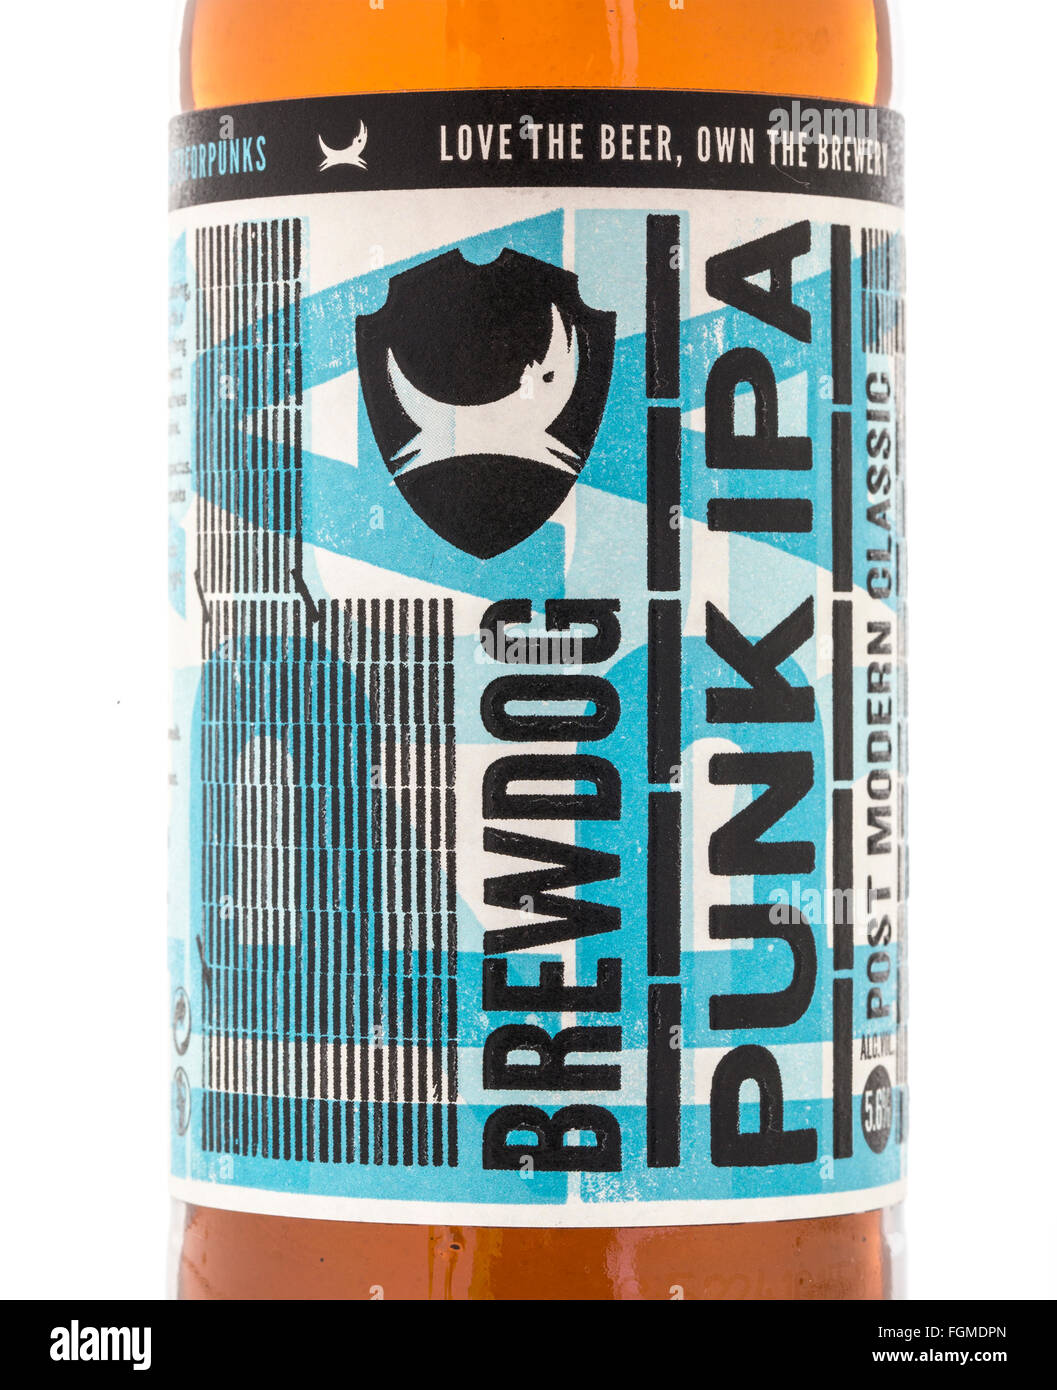 Brewdog Punk IPA bottle beer on a white background Stock Photo